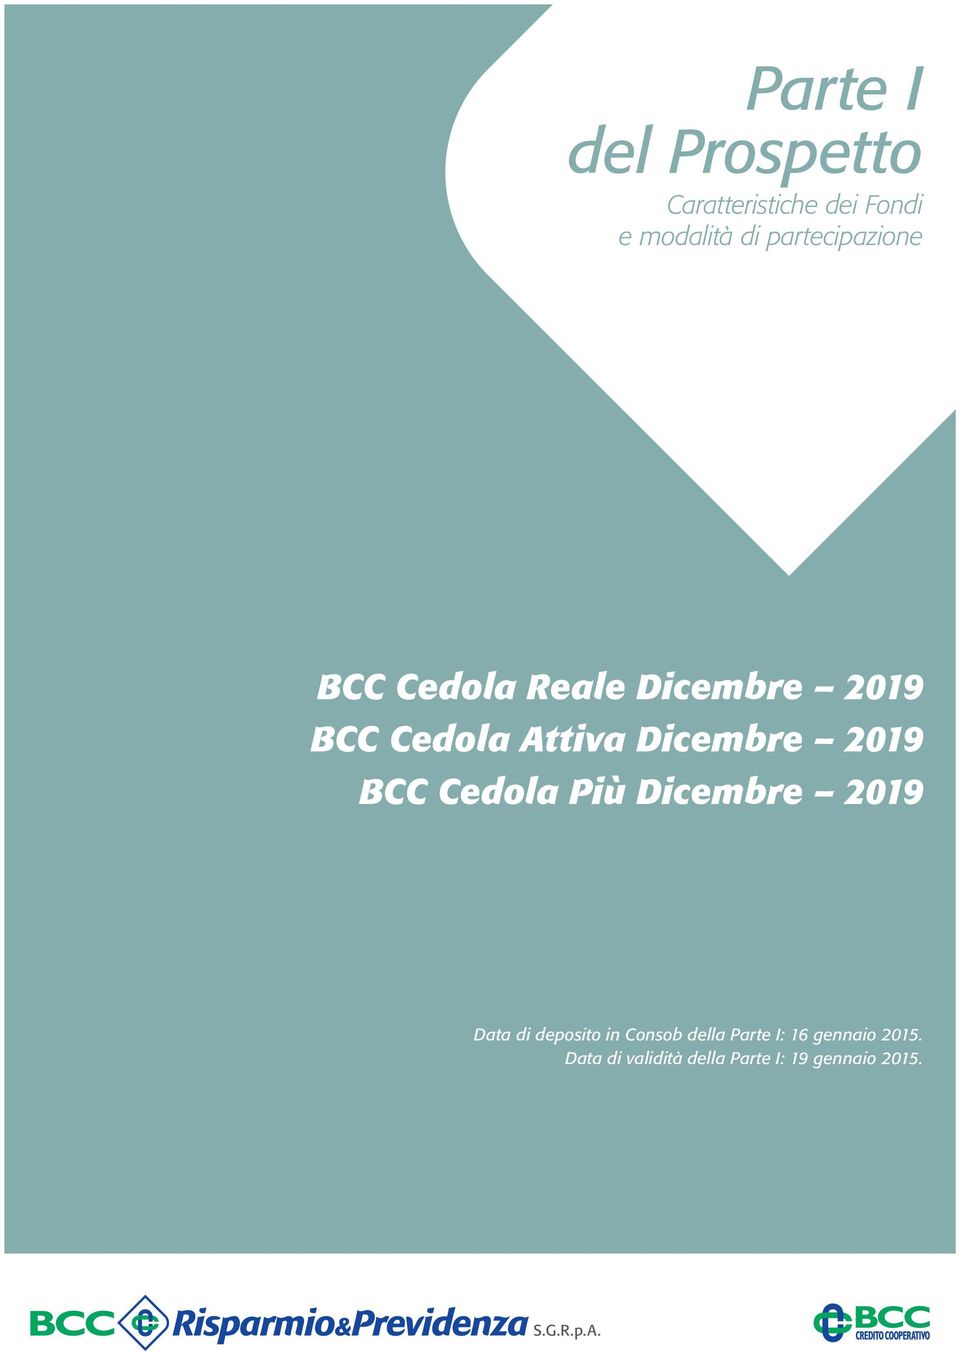 Dicembre 2019 BCC Cedola Più Dicembre 2019 Data di deposito in Consob